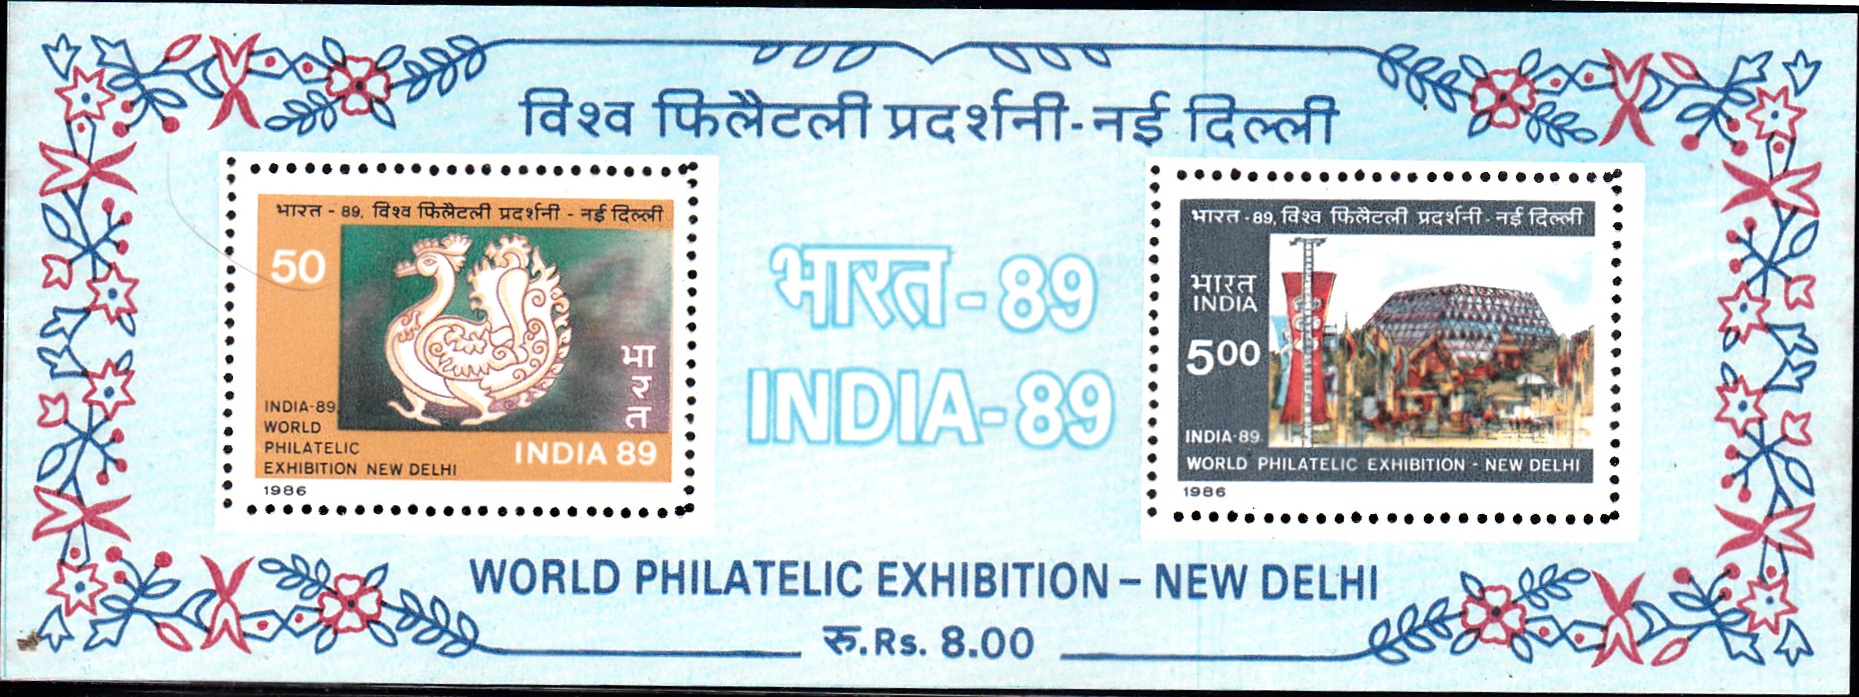 India-89